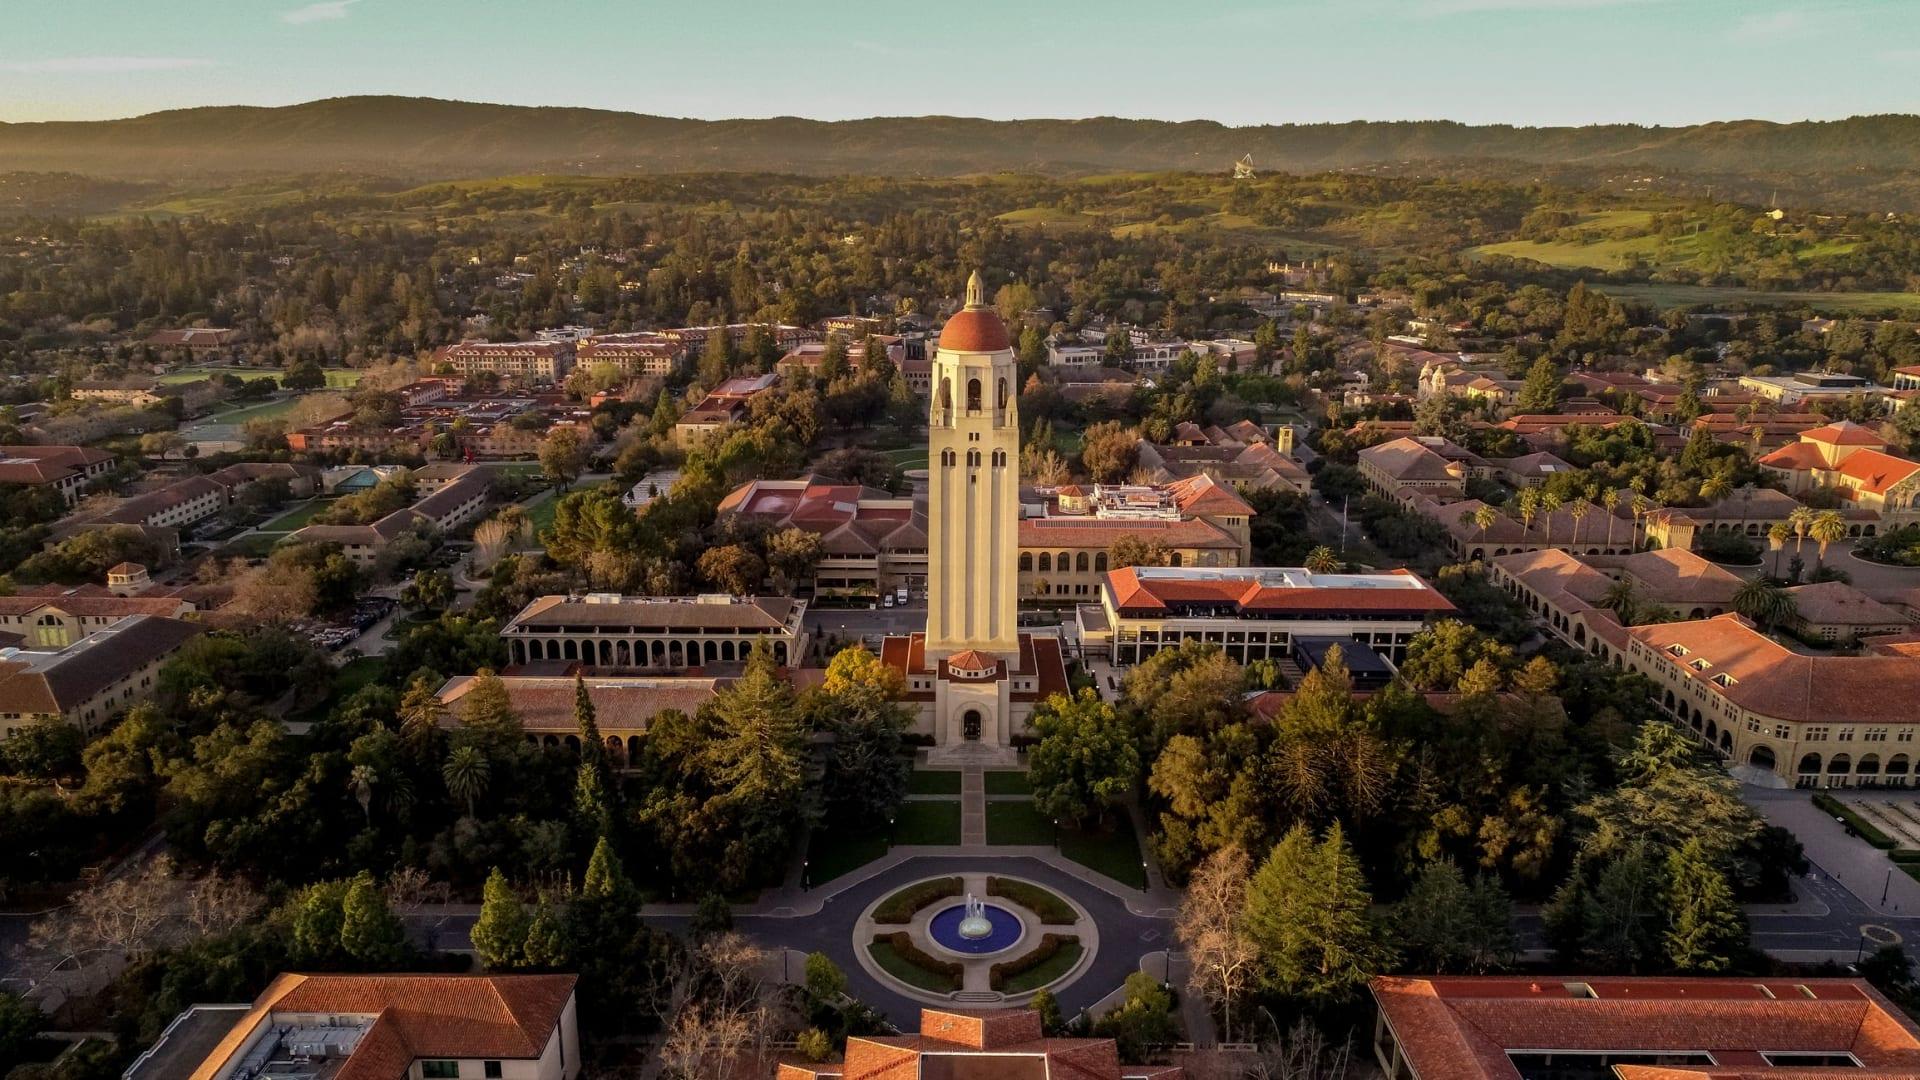 Stanford backpedals on newspeak advisory after massive backlash